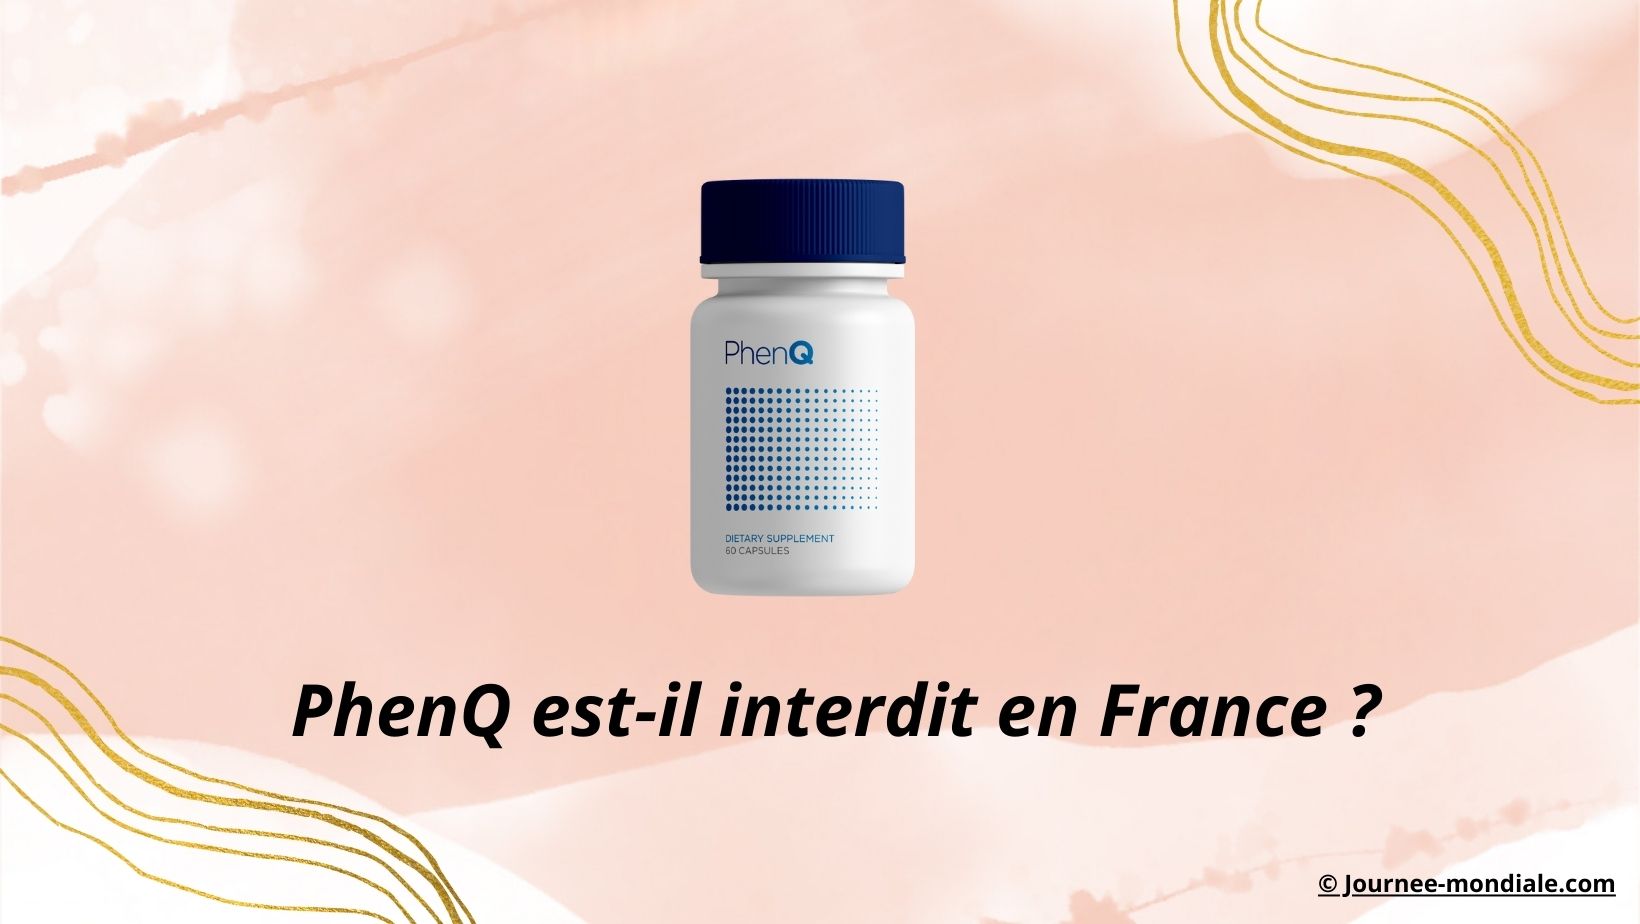 PhenQ est-il interdit en France?